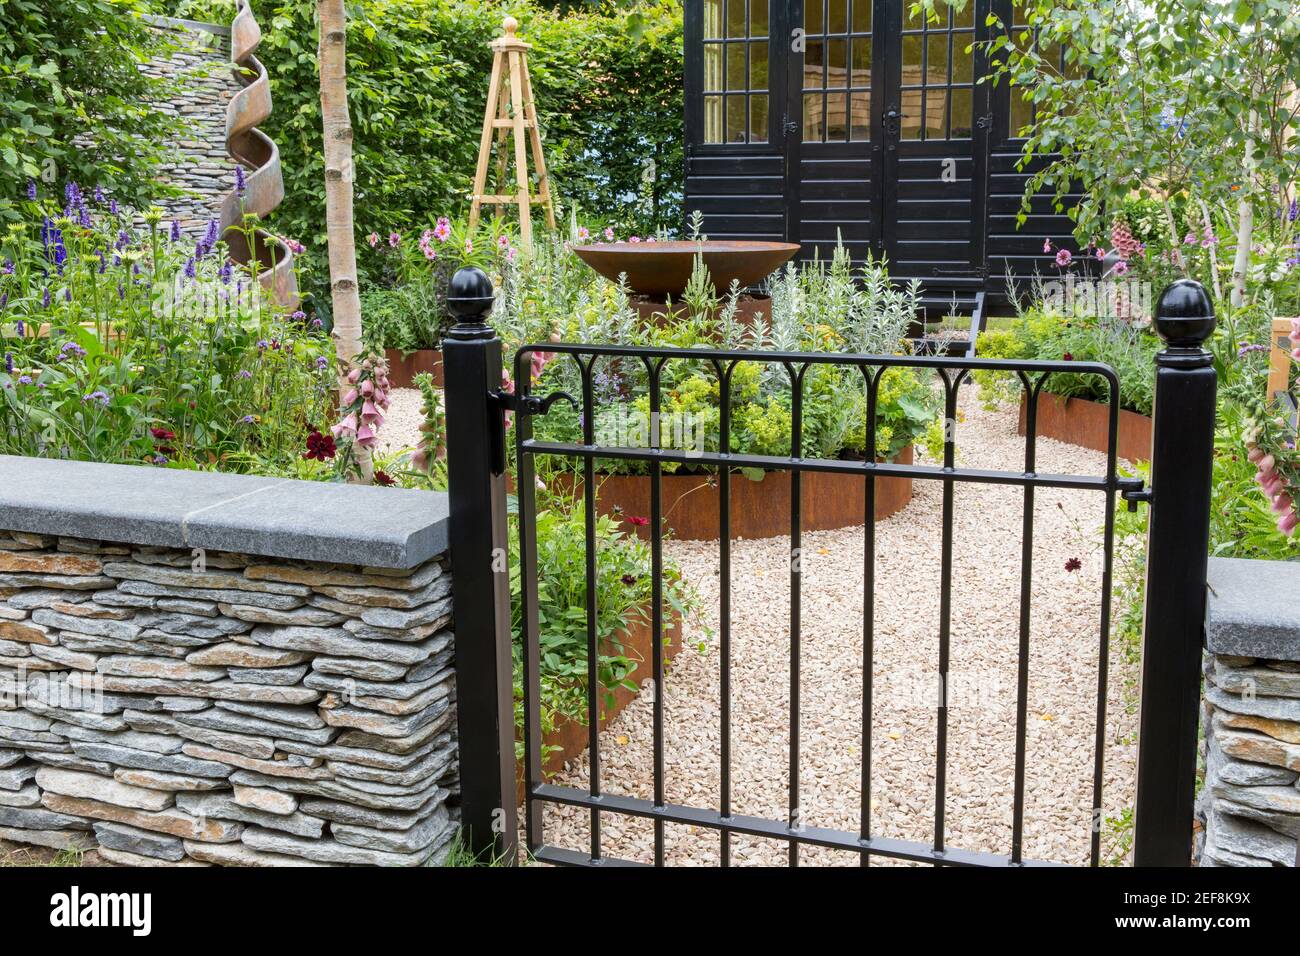 Cottage anglais jardin de campagne Une porte de jardin en métal noir peint - mur en pierre sèche avec chemin de gravier et lits de fleurs jardin frontière Angleterre Royaume-Uni Banque D'Images